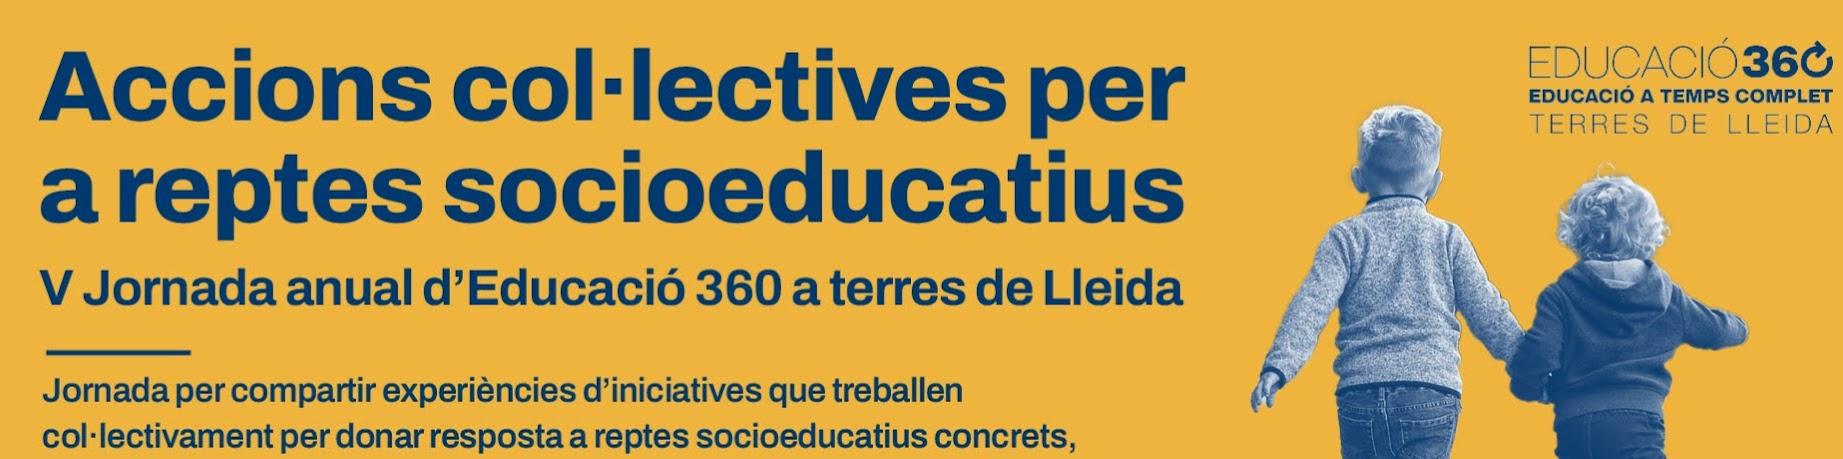 Jornada d'Educació 360 a terres de Lleida: accions col·lectives per a reptes socioeducatius.